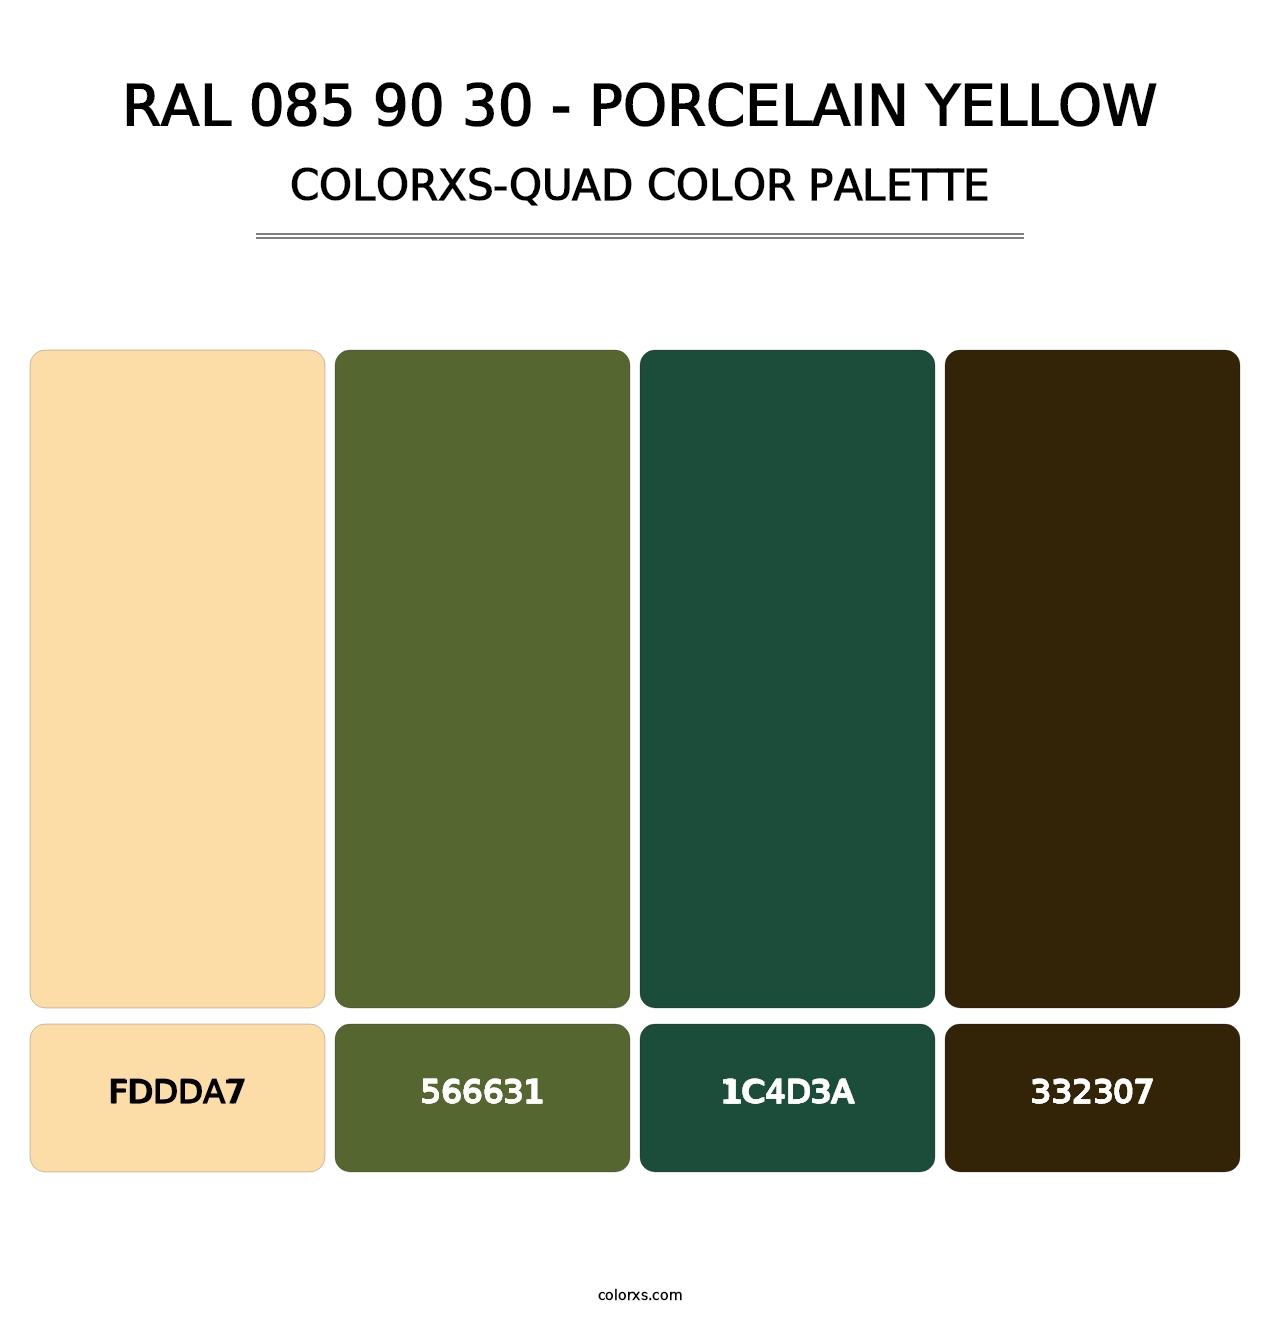 RAL 085 90 30 - Porcelain Yellow - Colorxs Quad Palette